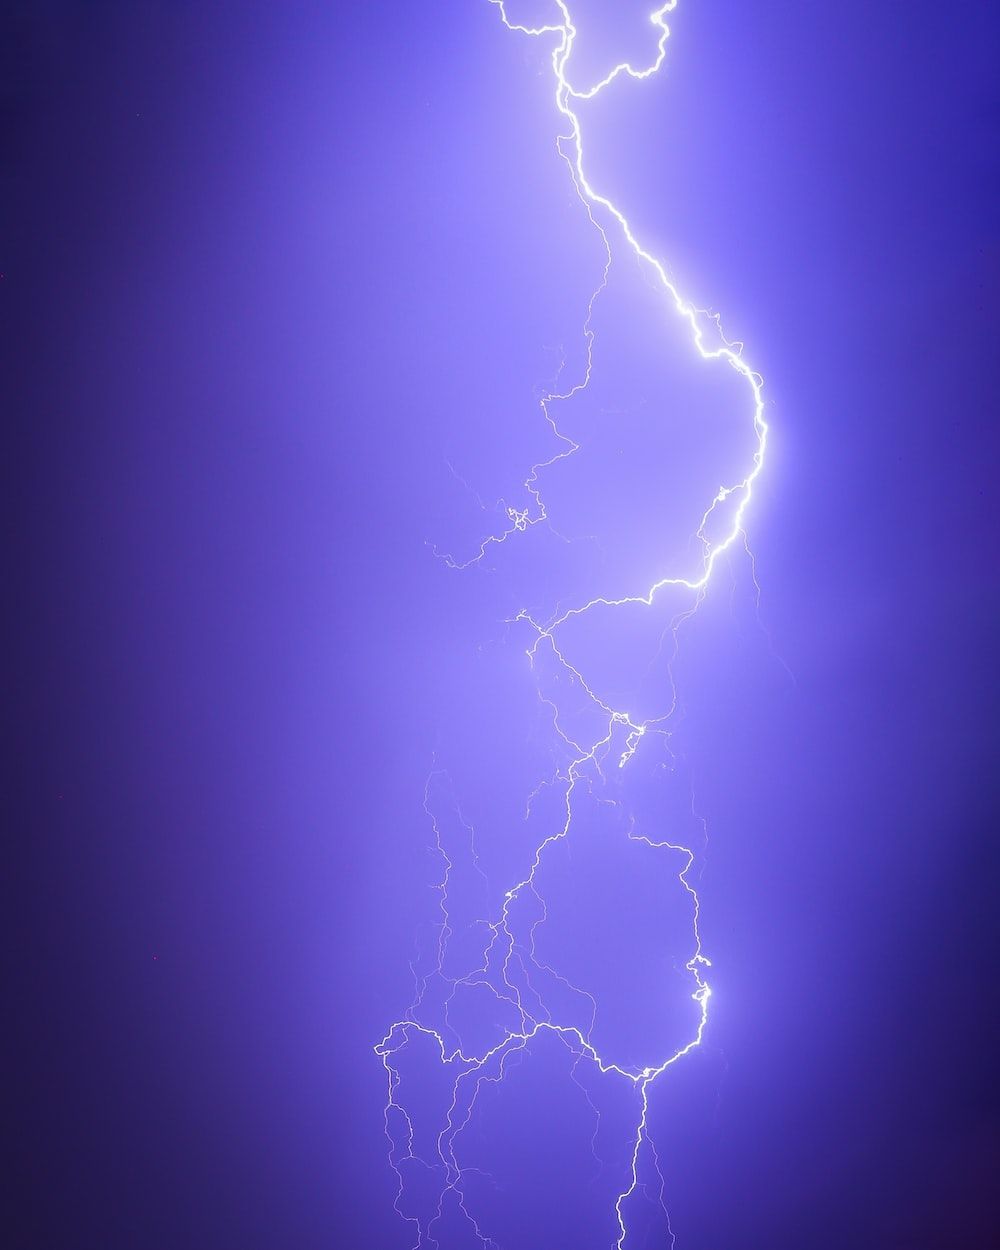 A bolt of lightning illuminates the sky in purple. - Lightning